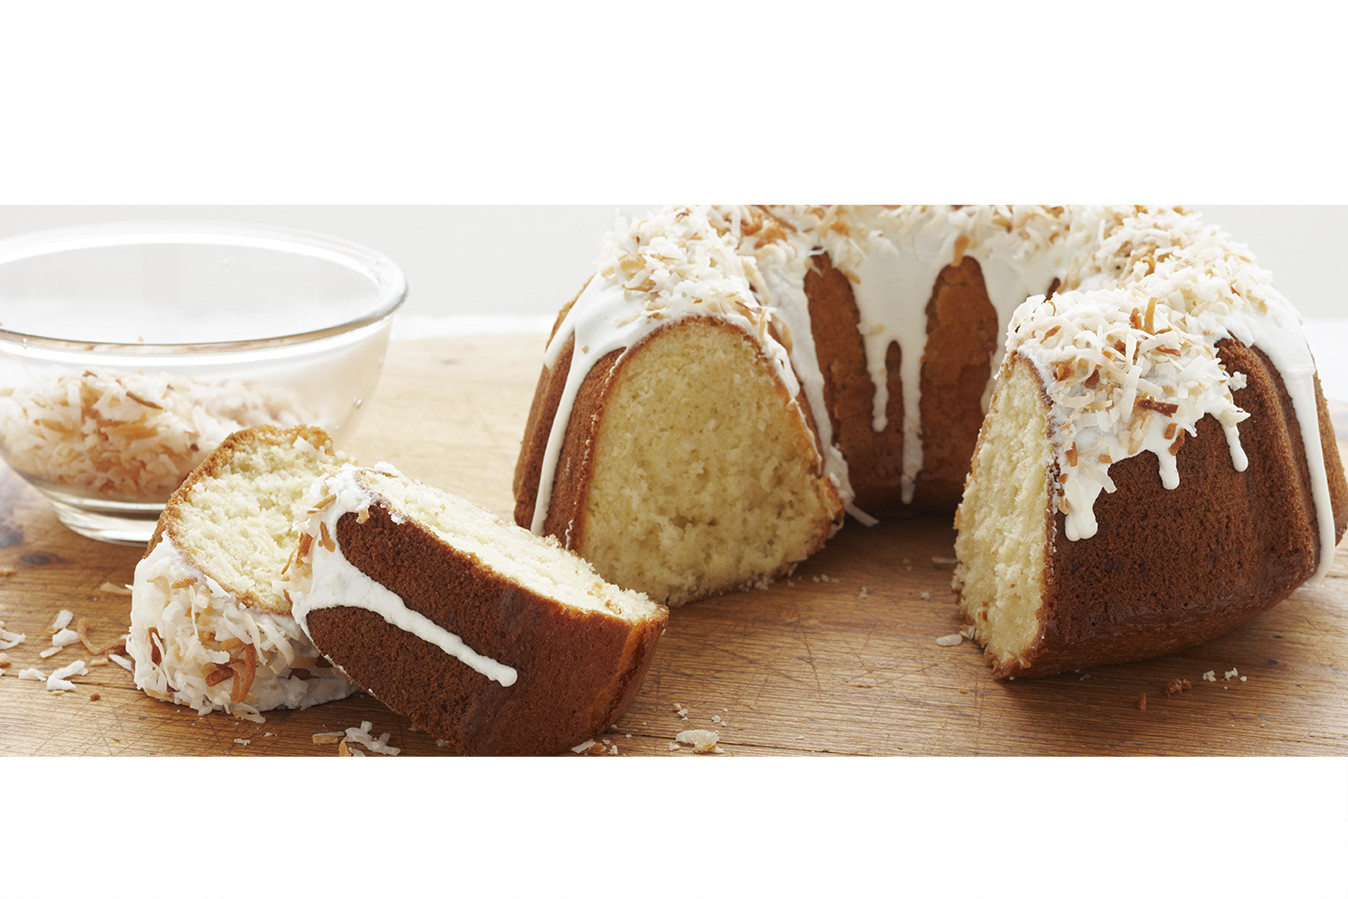 Ducan Hines Lemon Pound Cake
 duncan hines pound cake